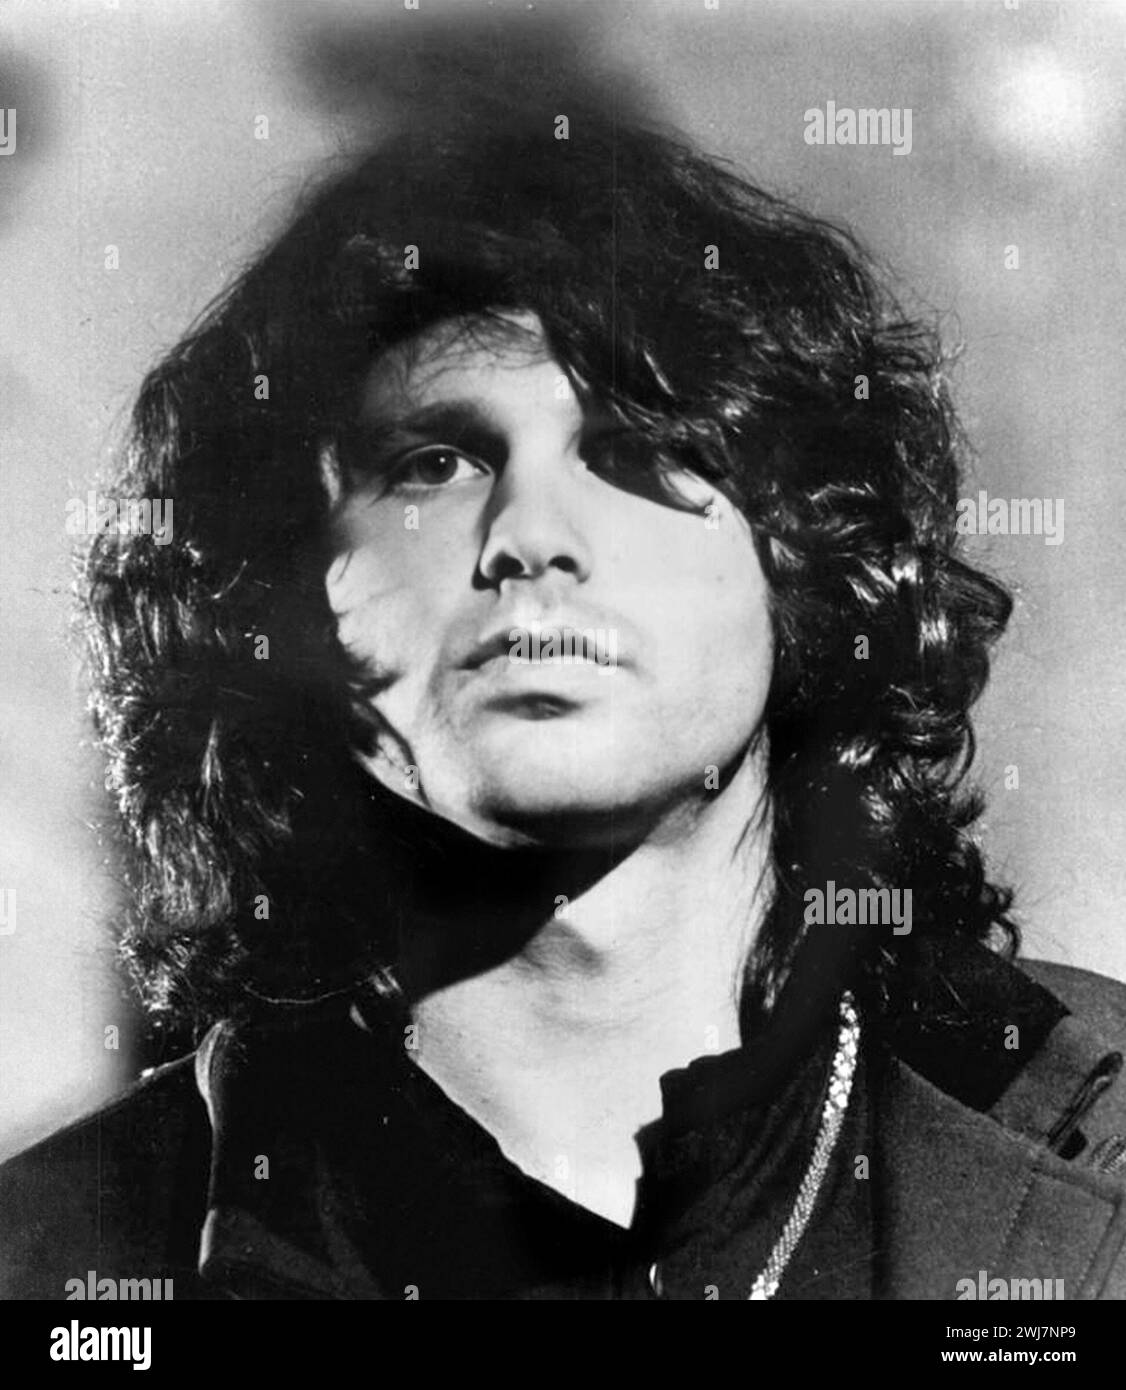 Jim Morrison. Portrait du chanteur et compositeur américain James Douglas Morrison (1943-1971), photo publicitaire, 1968. Morrison était le chanteur principal des Doors. Banque D'Images